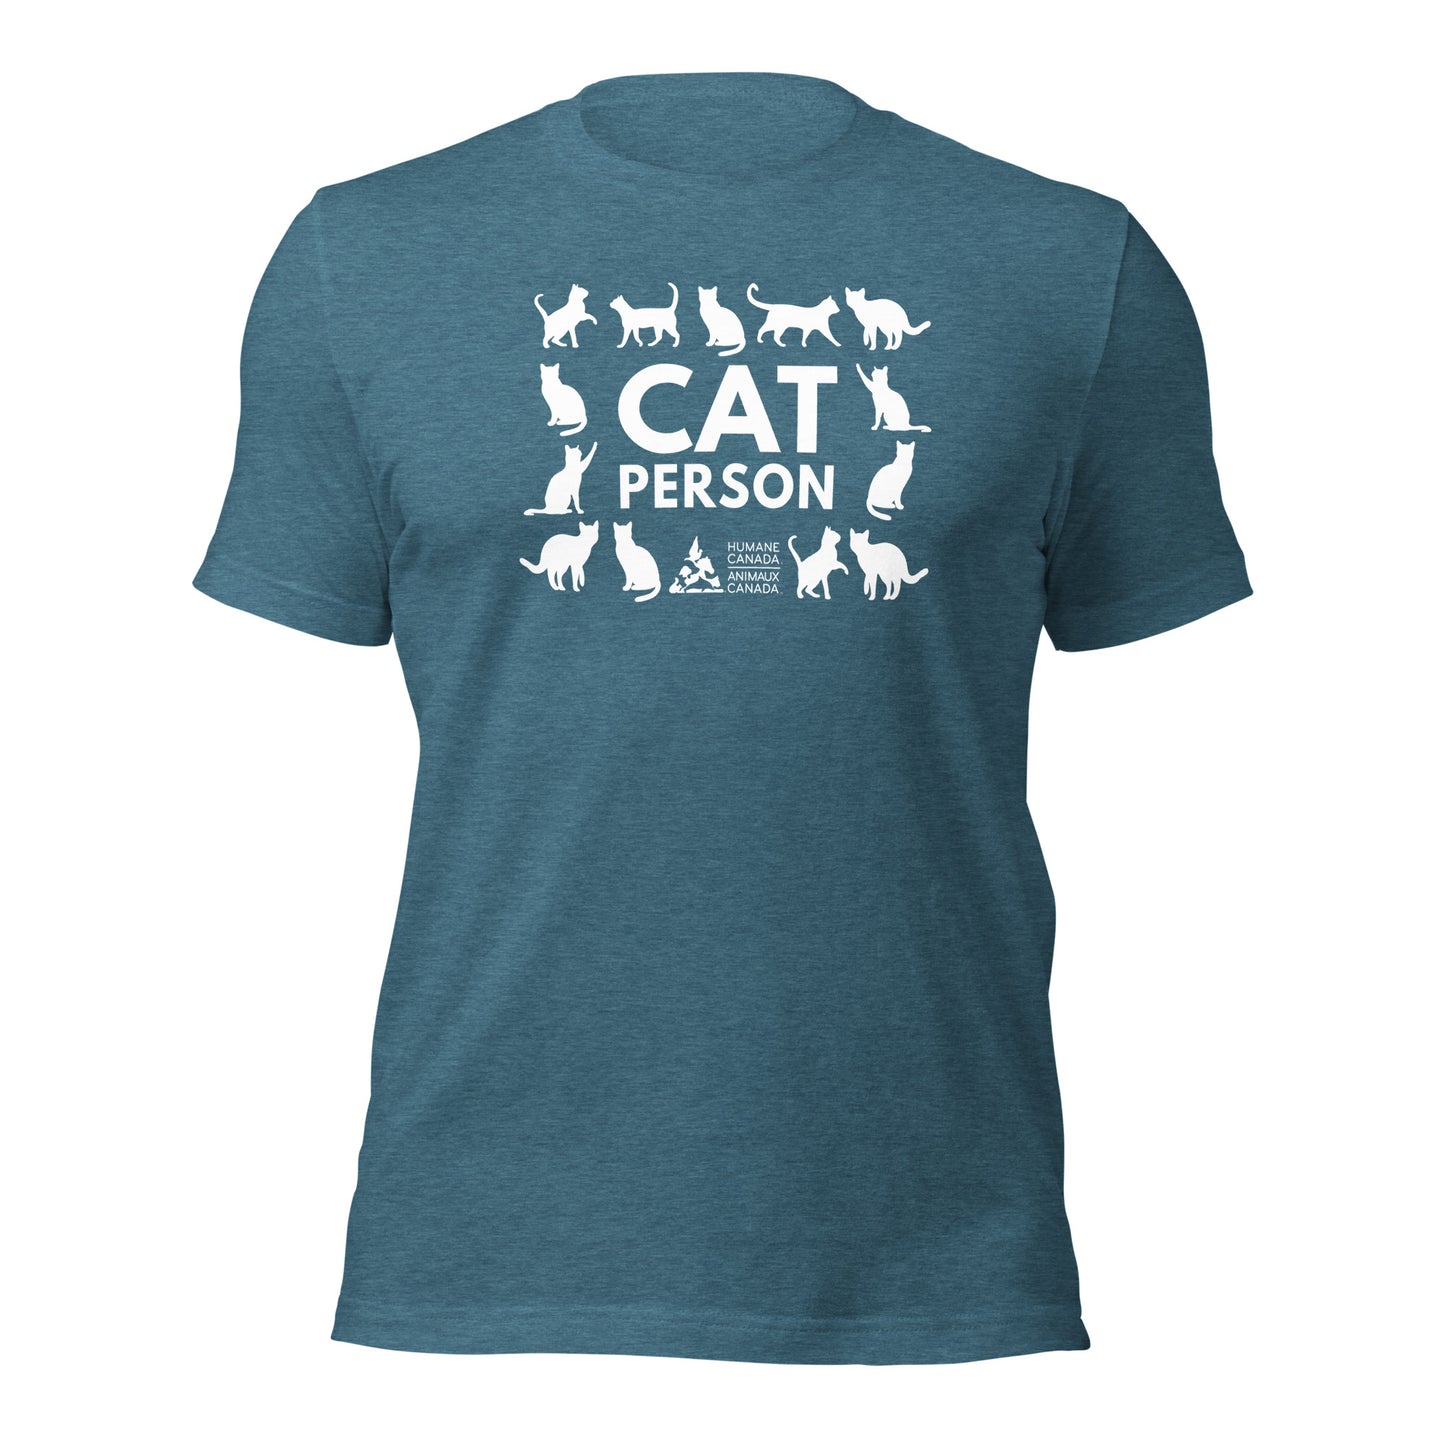 Cat Person - Unisex T-Shirt